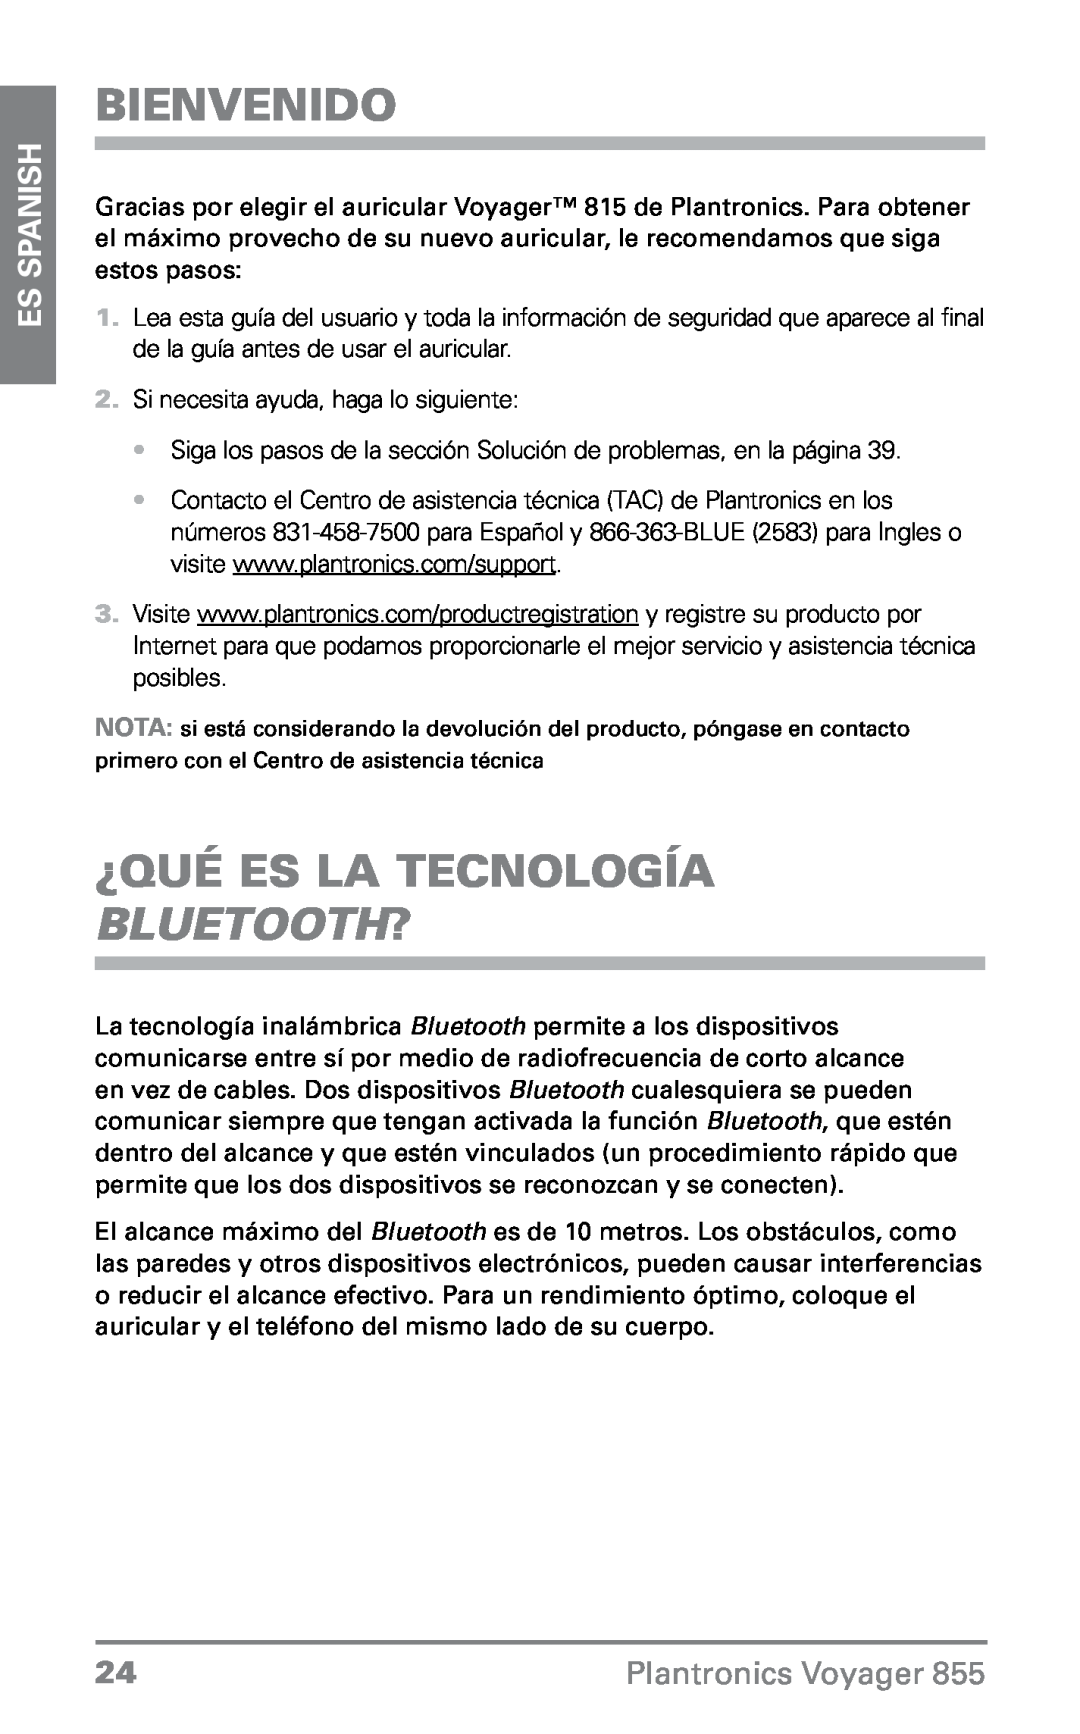 Plantronics VOYAGER855 manual Bienvenido, ¿Qué es la tecnología Bluetooth?, ES Spanish, Plantronics Voyager 